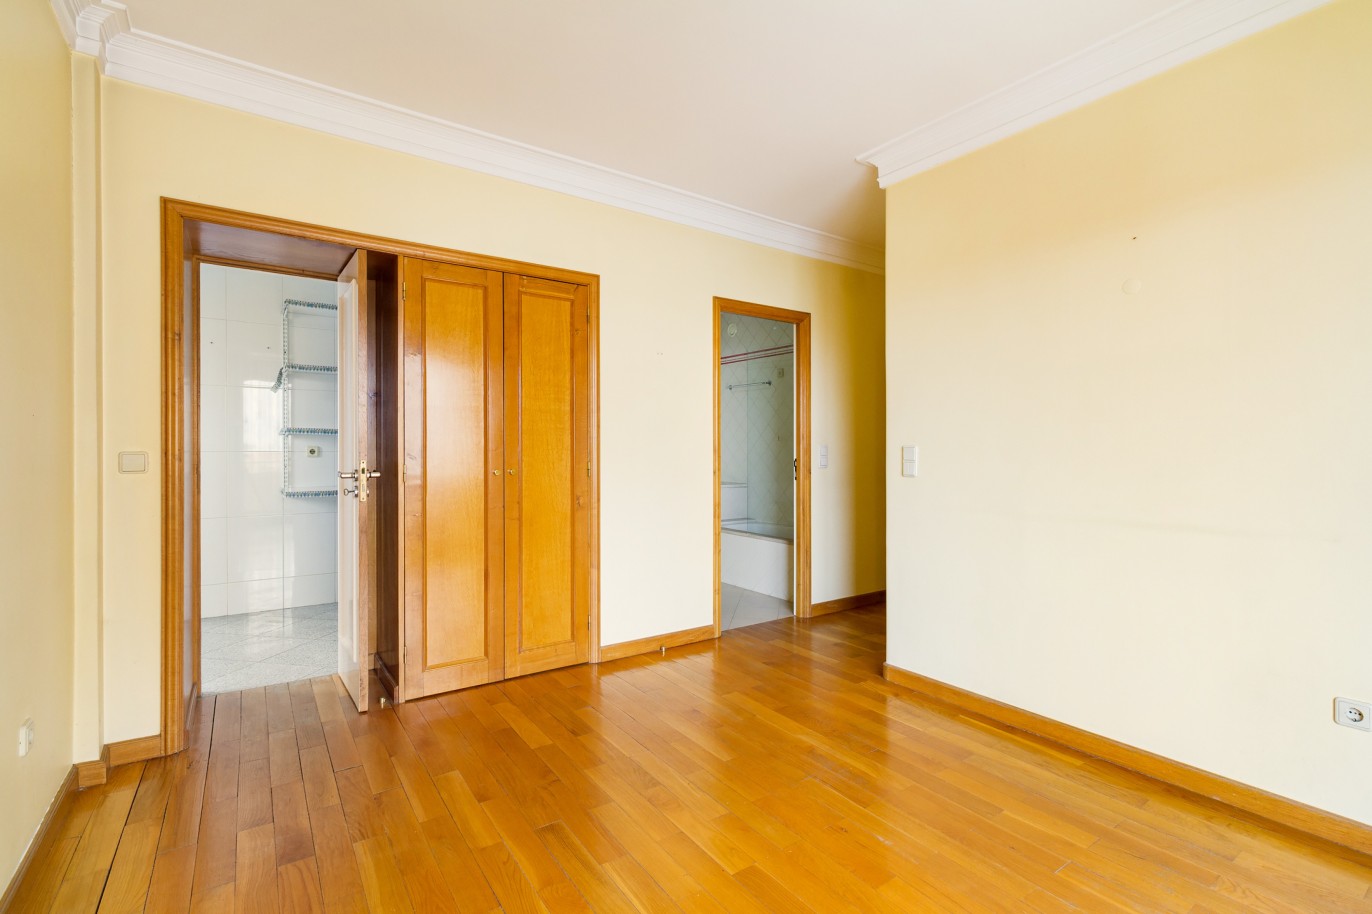 Apartamento com varanda, para venda, no Porto_221682